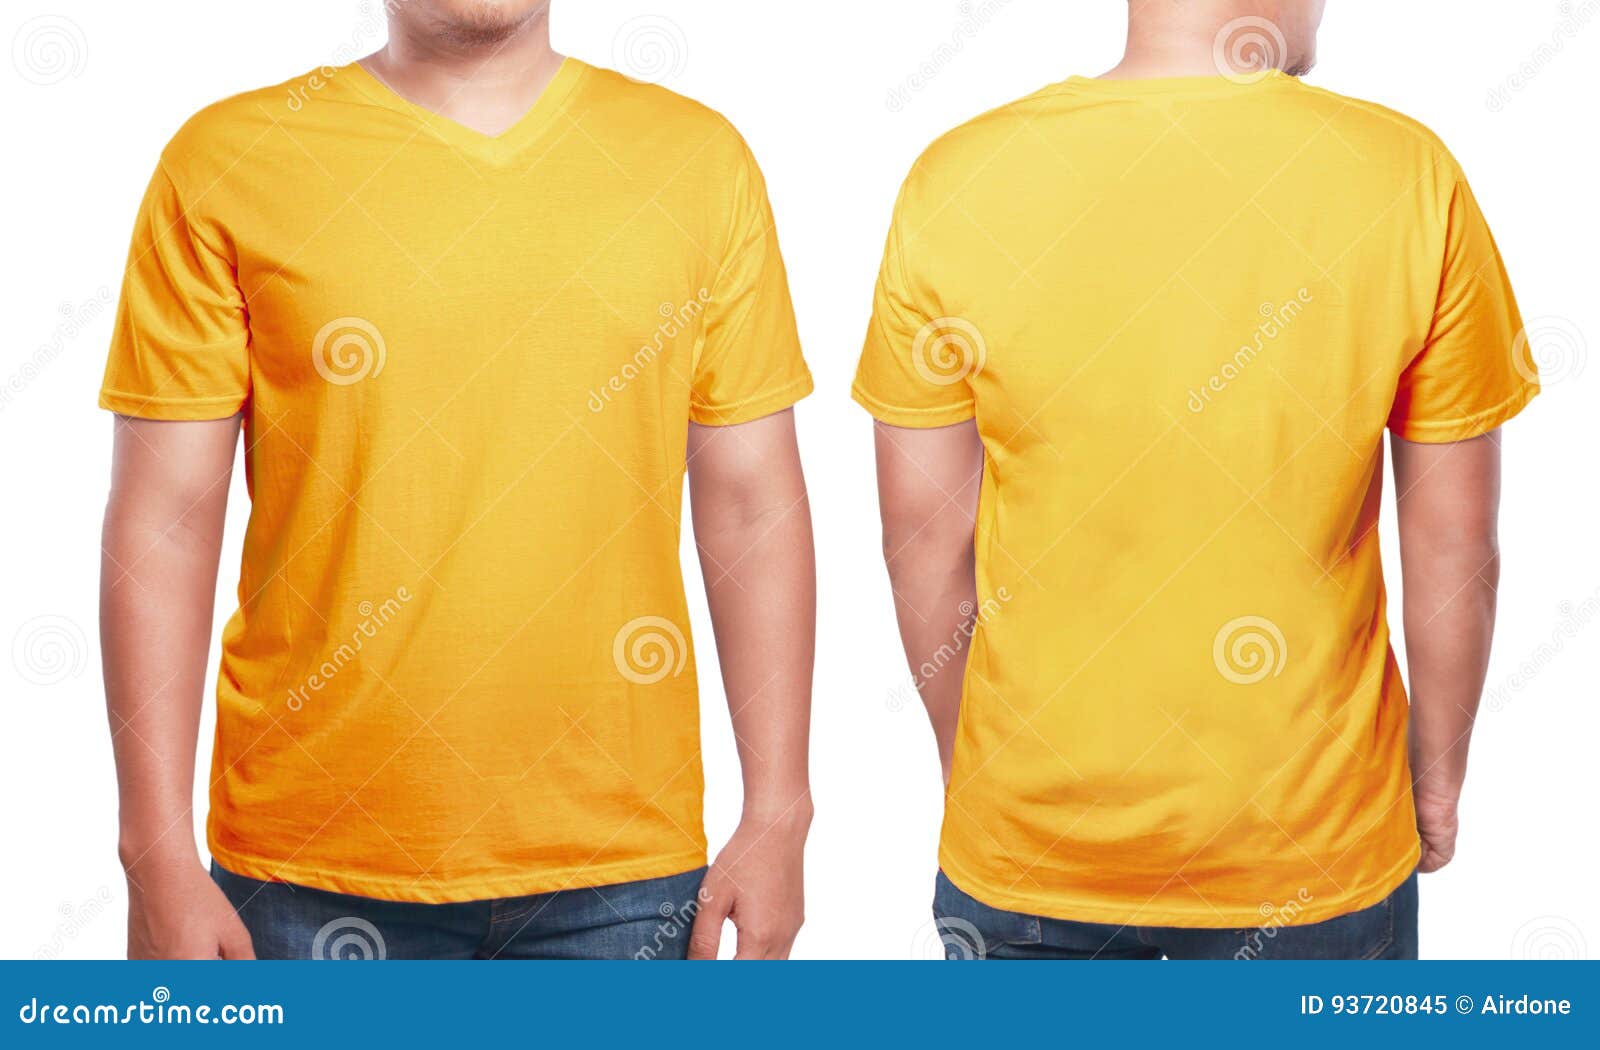 Orange V-Neck Shirt Design Template Stock Image - Image of presentation ...